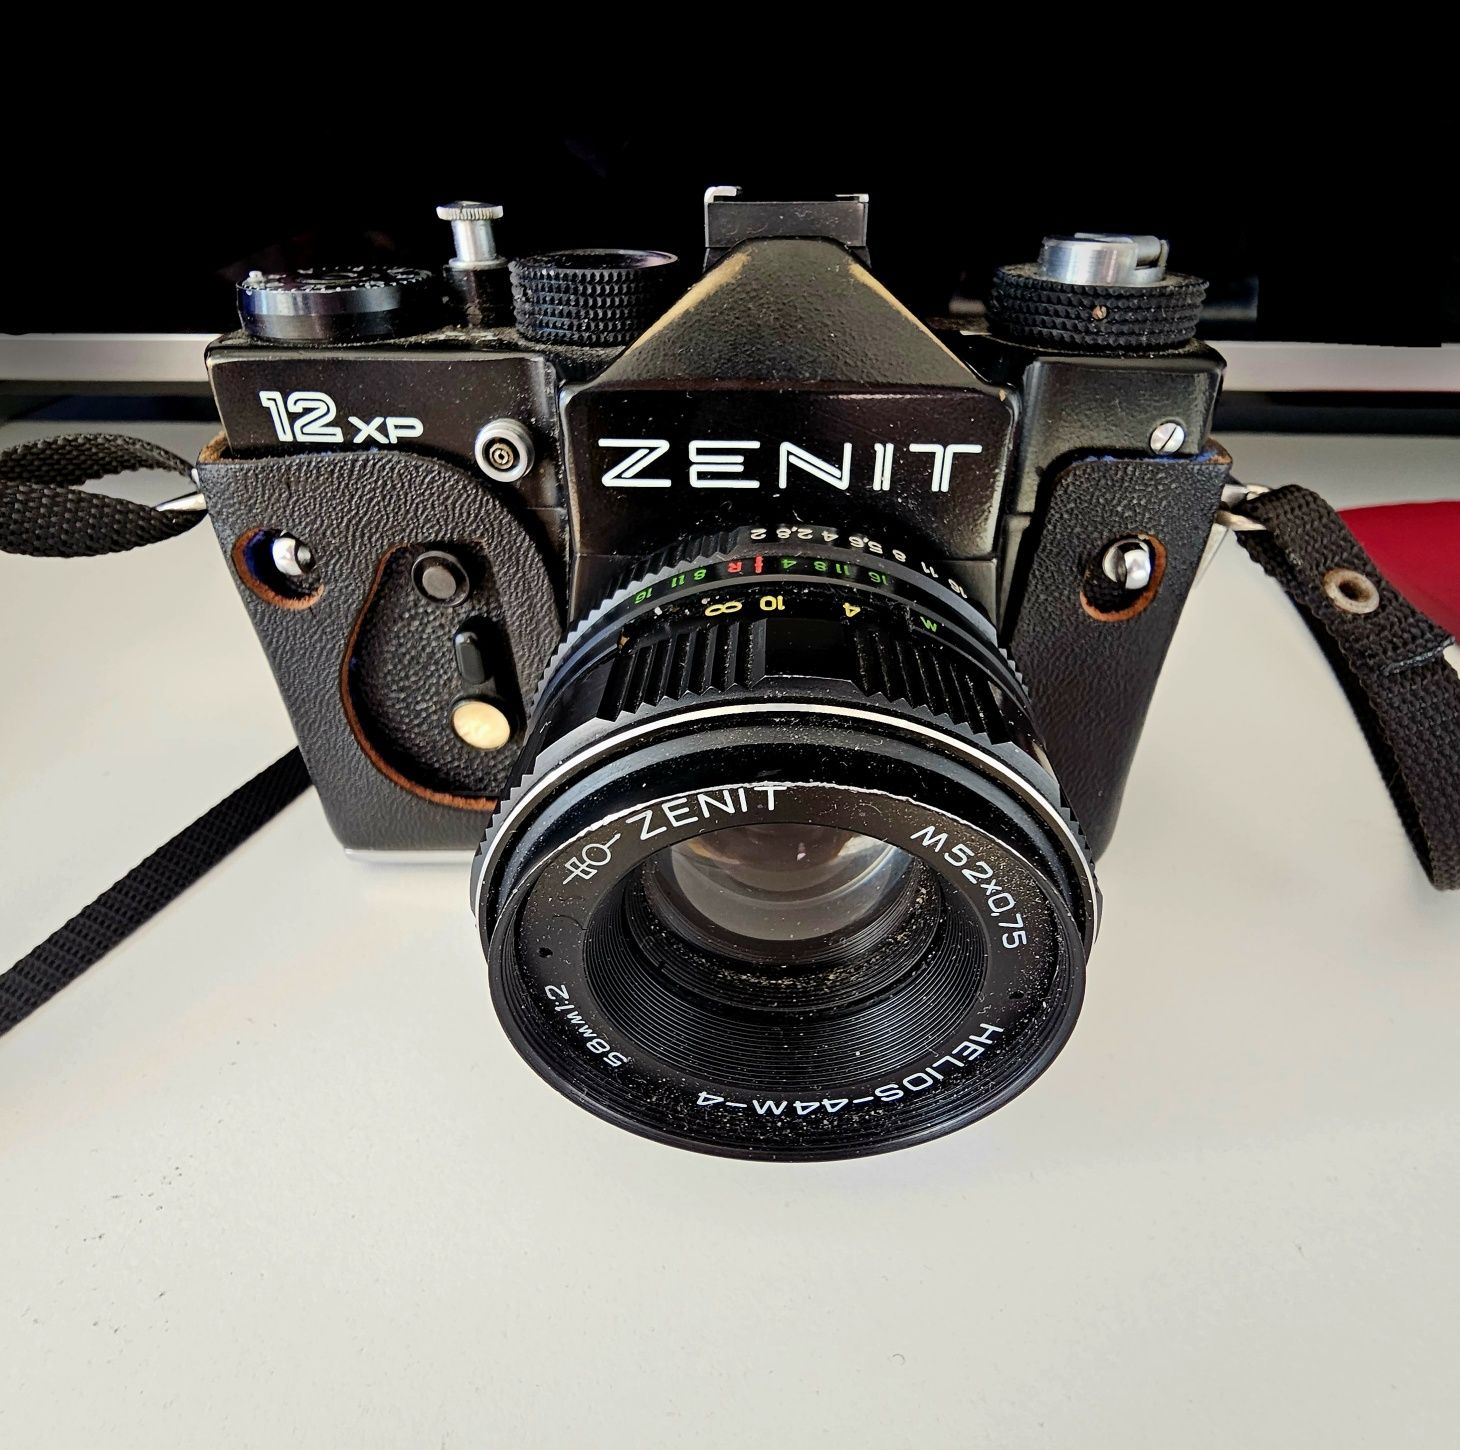 Zenit 12xP made in usrr